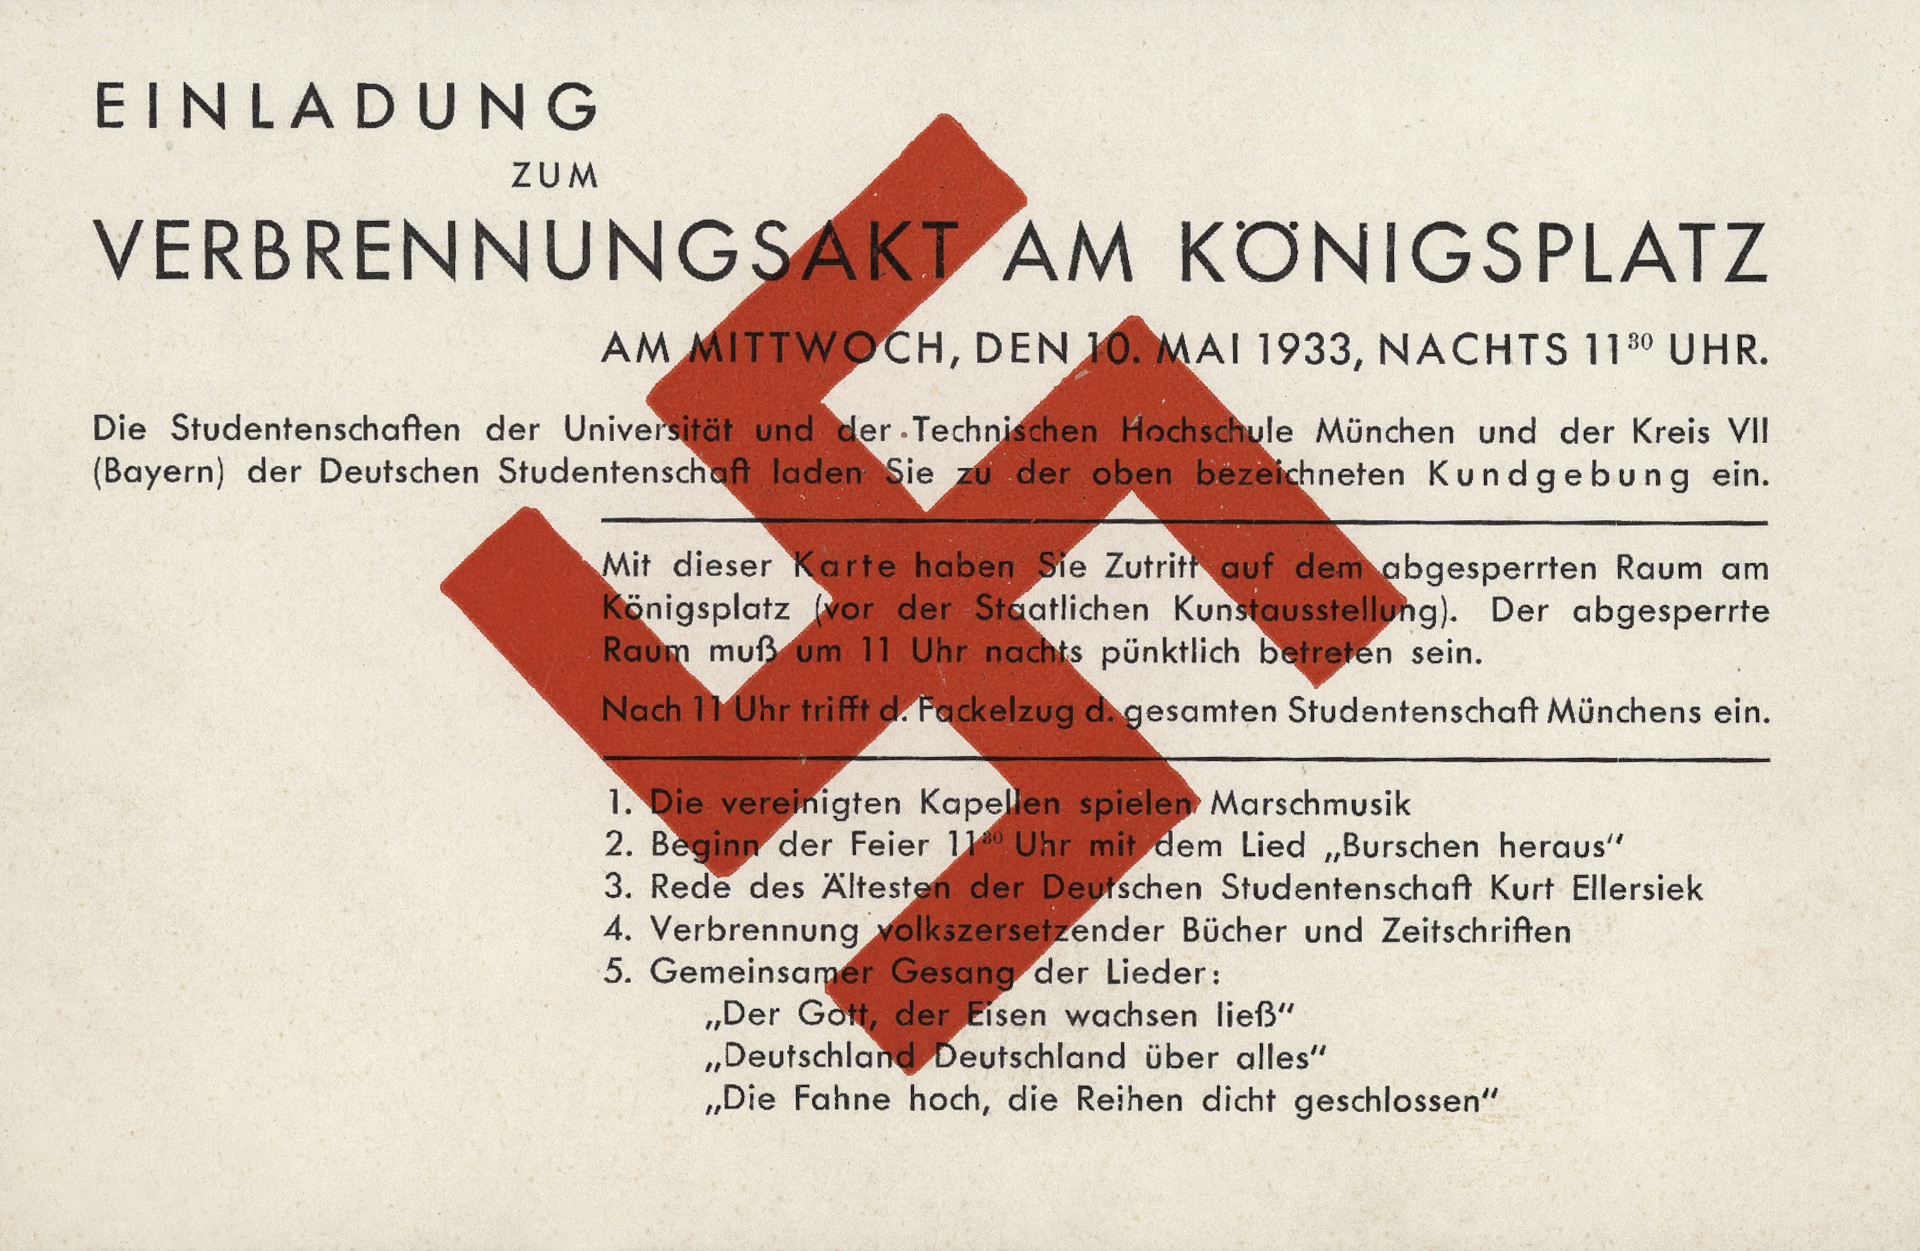 Eine beige Karte mit rotem Hakenkreuz. Darüber ein Text mit der Überschrift „Einladung zum Verbrennungsakt am Königsplatz am Mittwoch, den 10. Mai 1933, nachts 11.30 Uhr“.